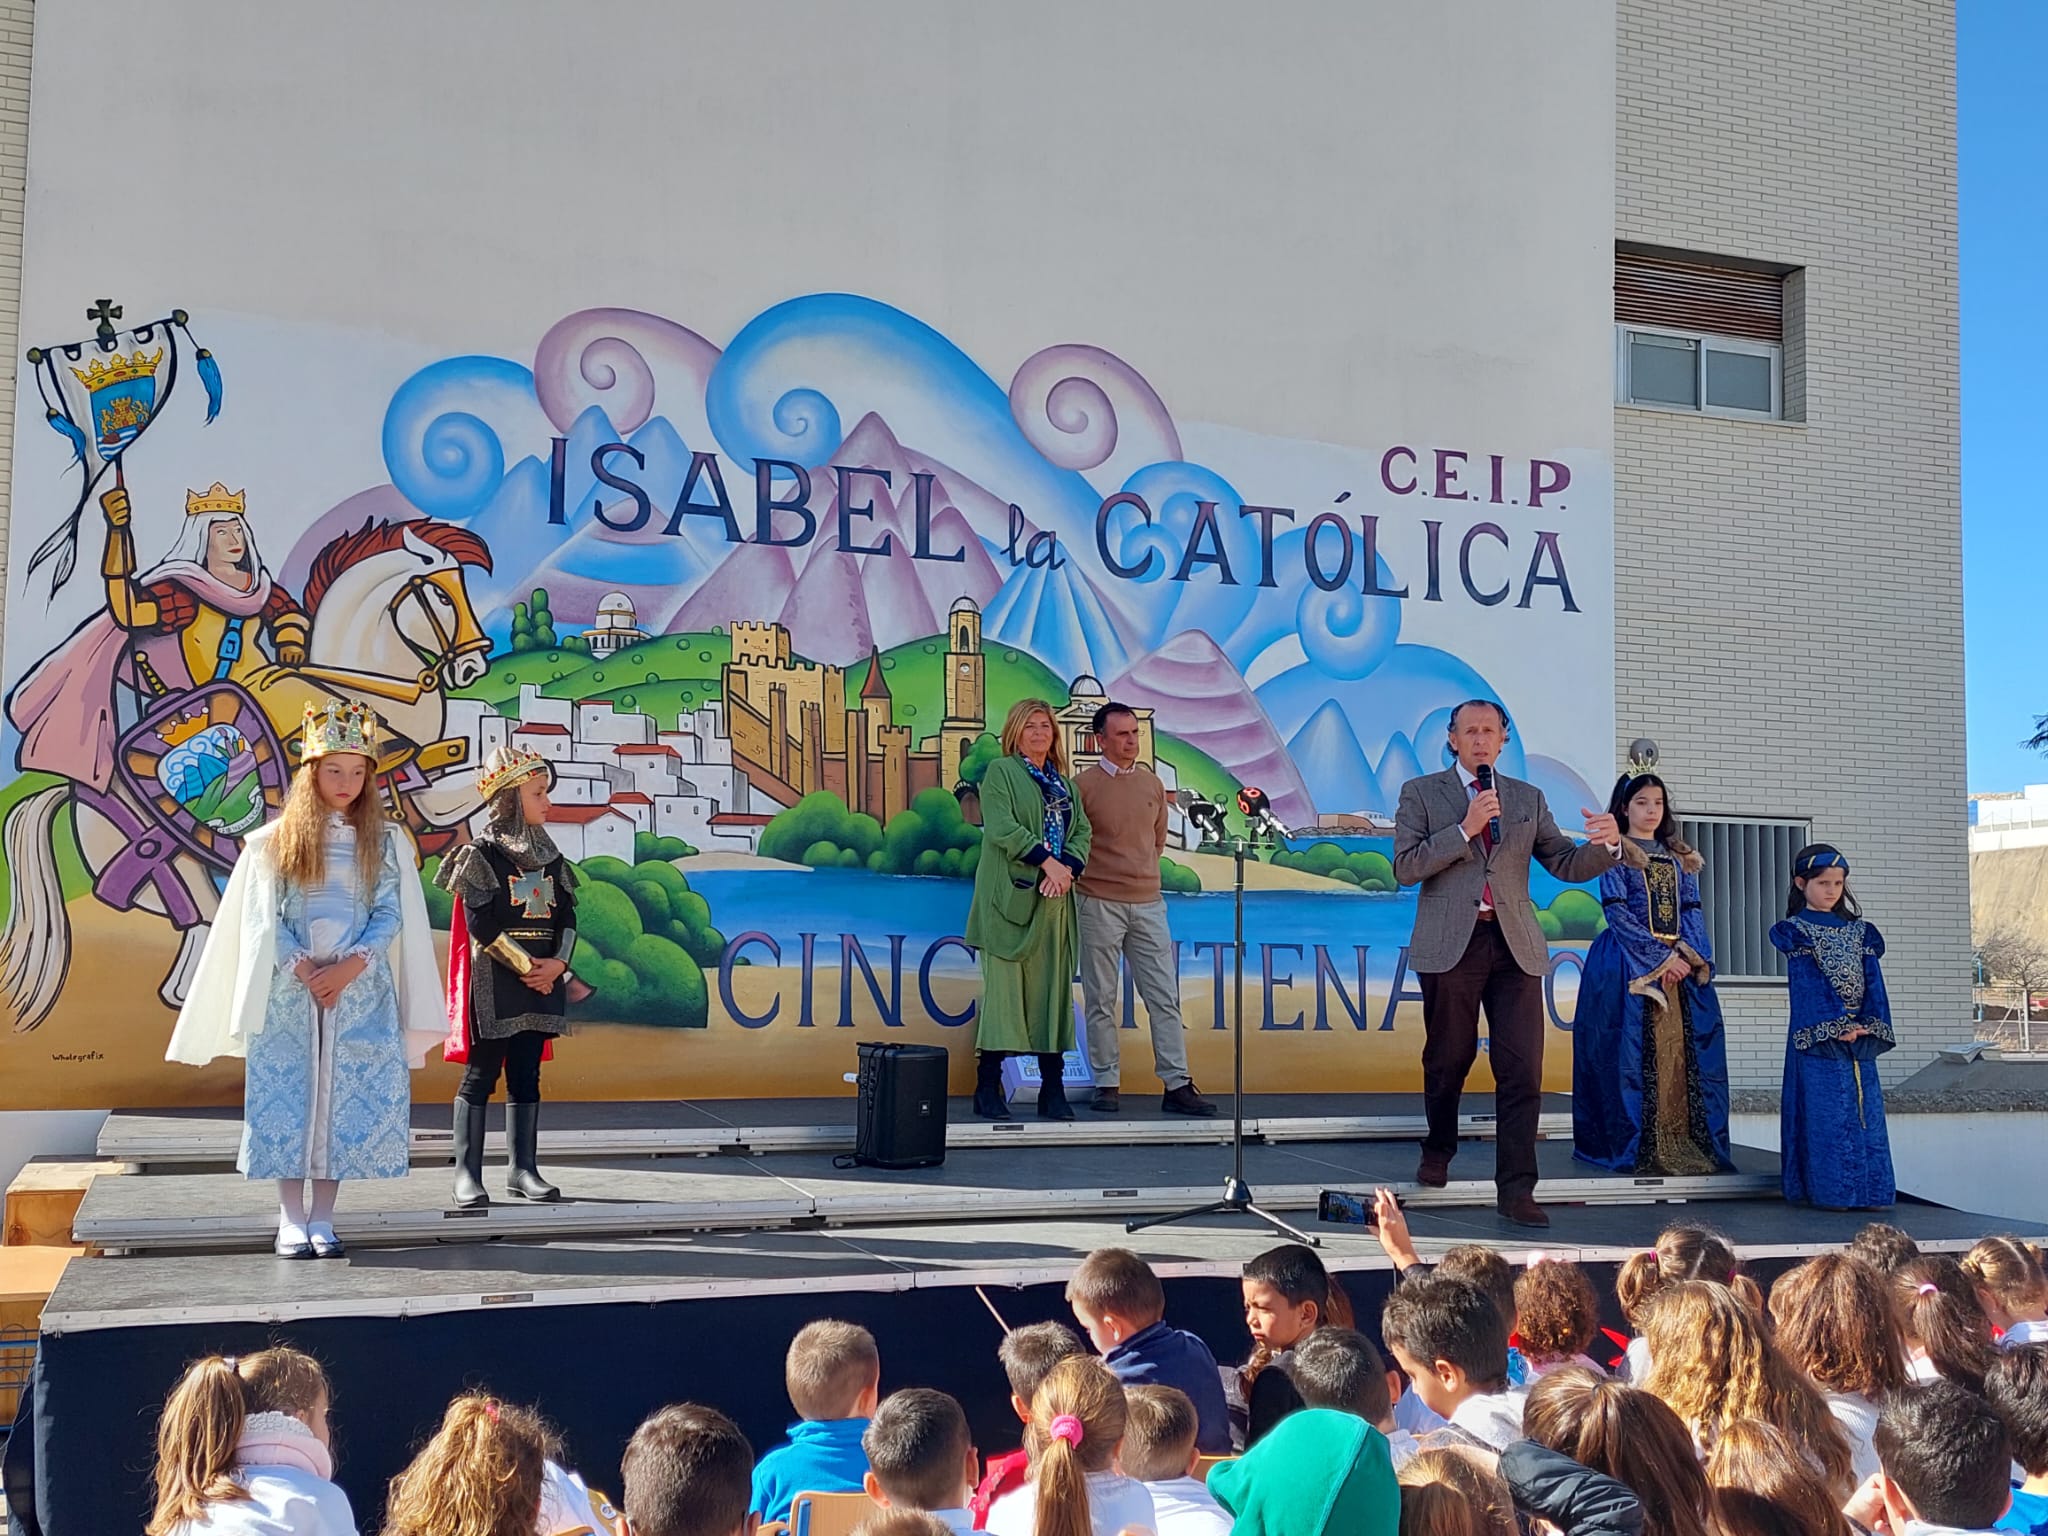 Actos con motivo del 50 aniversario del CEIP Isabel La Católica en Chiclana.